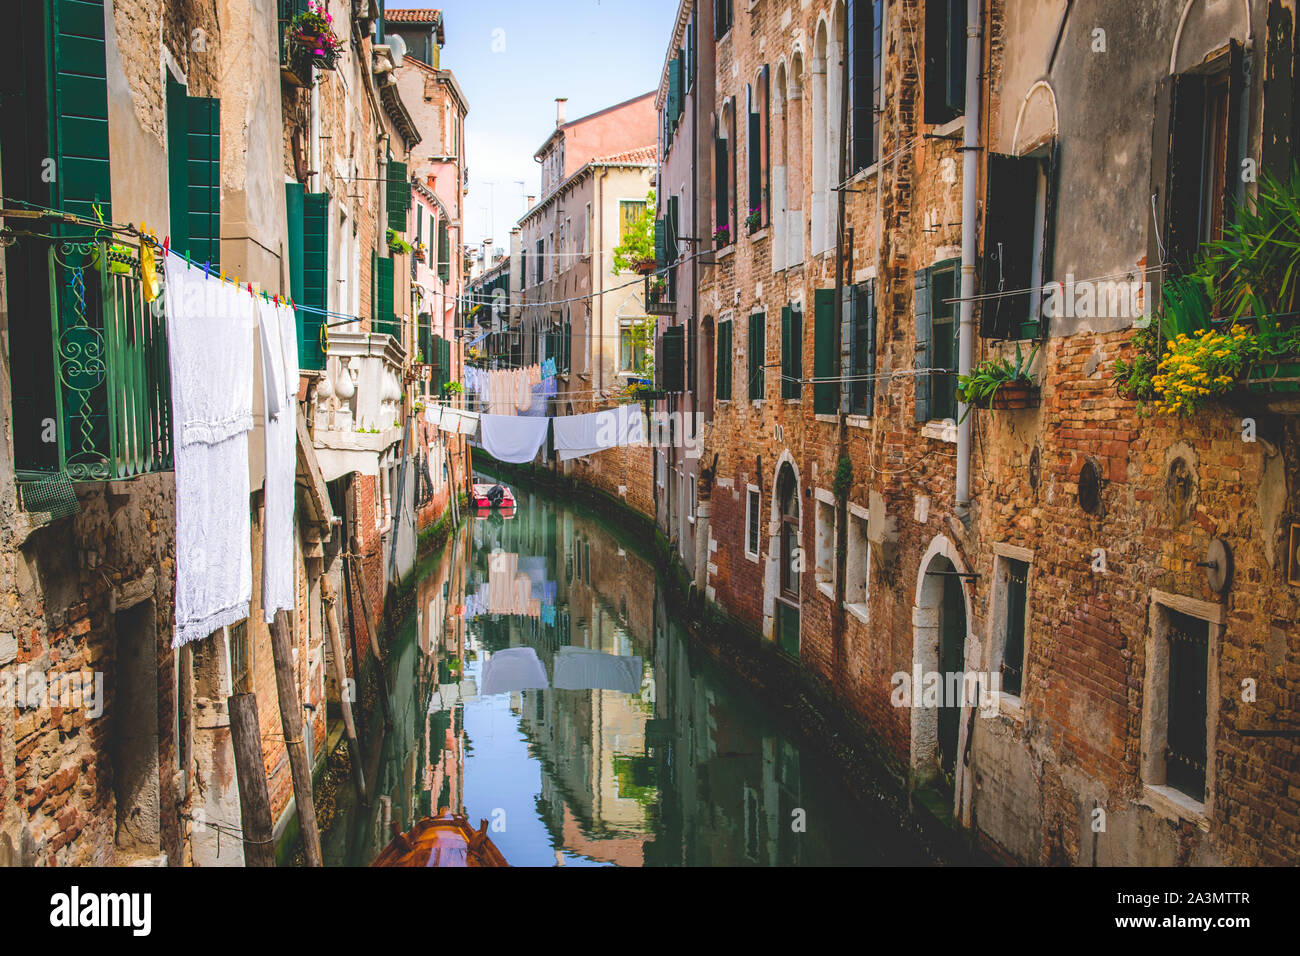 Romantischer Kanal in Venedig, rustikale Häusermauern mit Wäscheleine und Blunmen Stockfoto